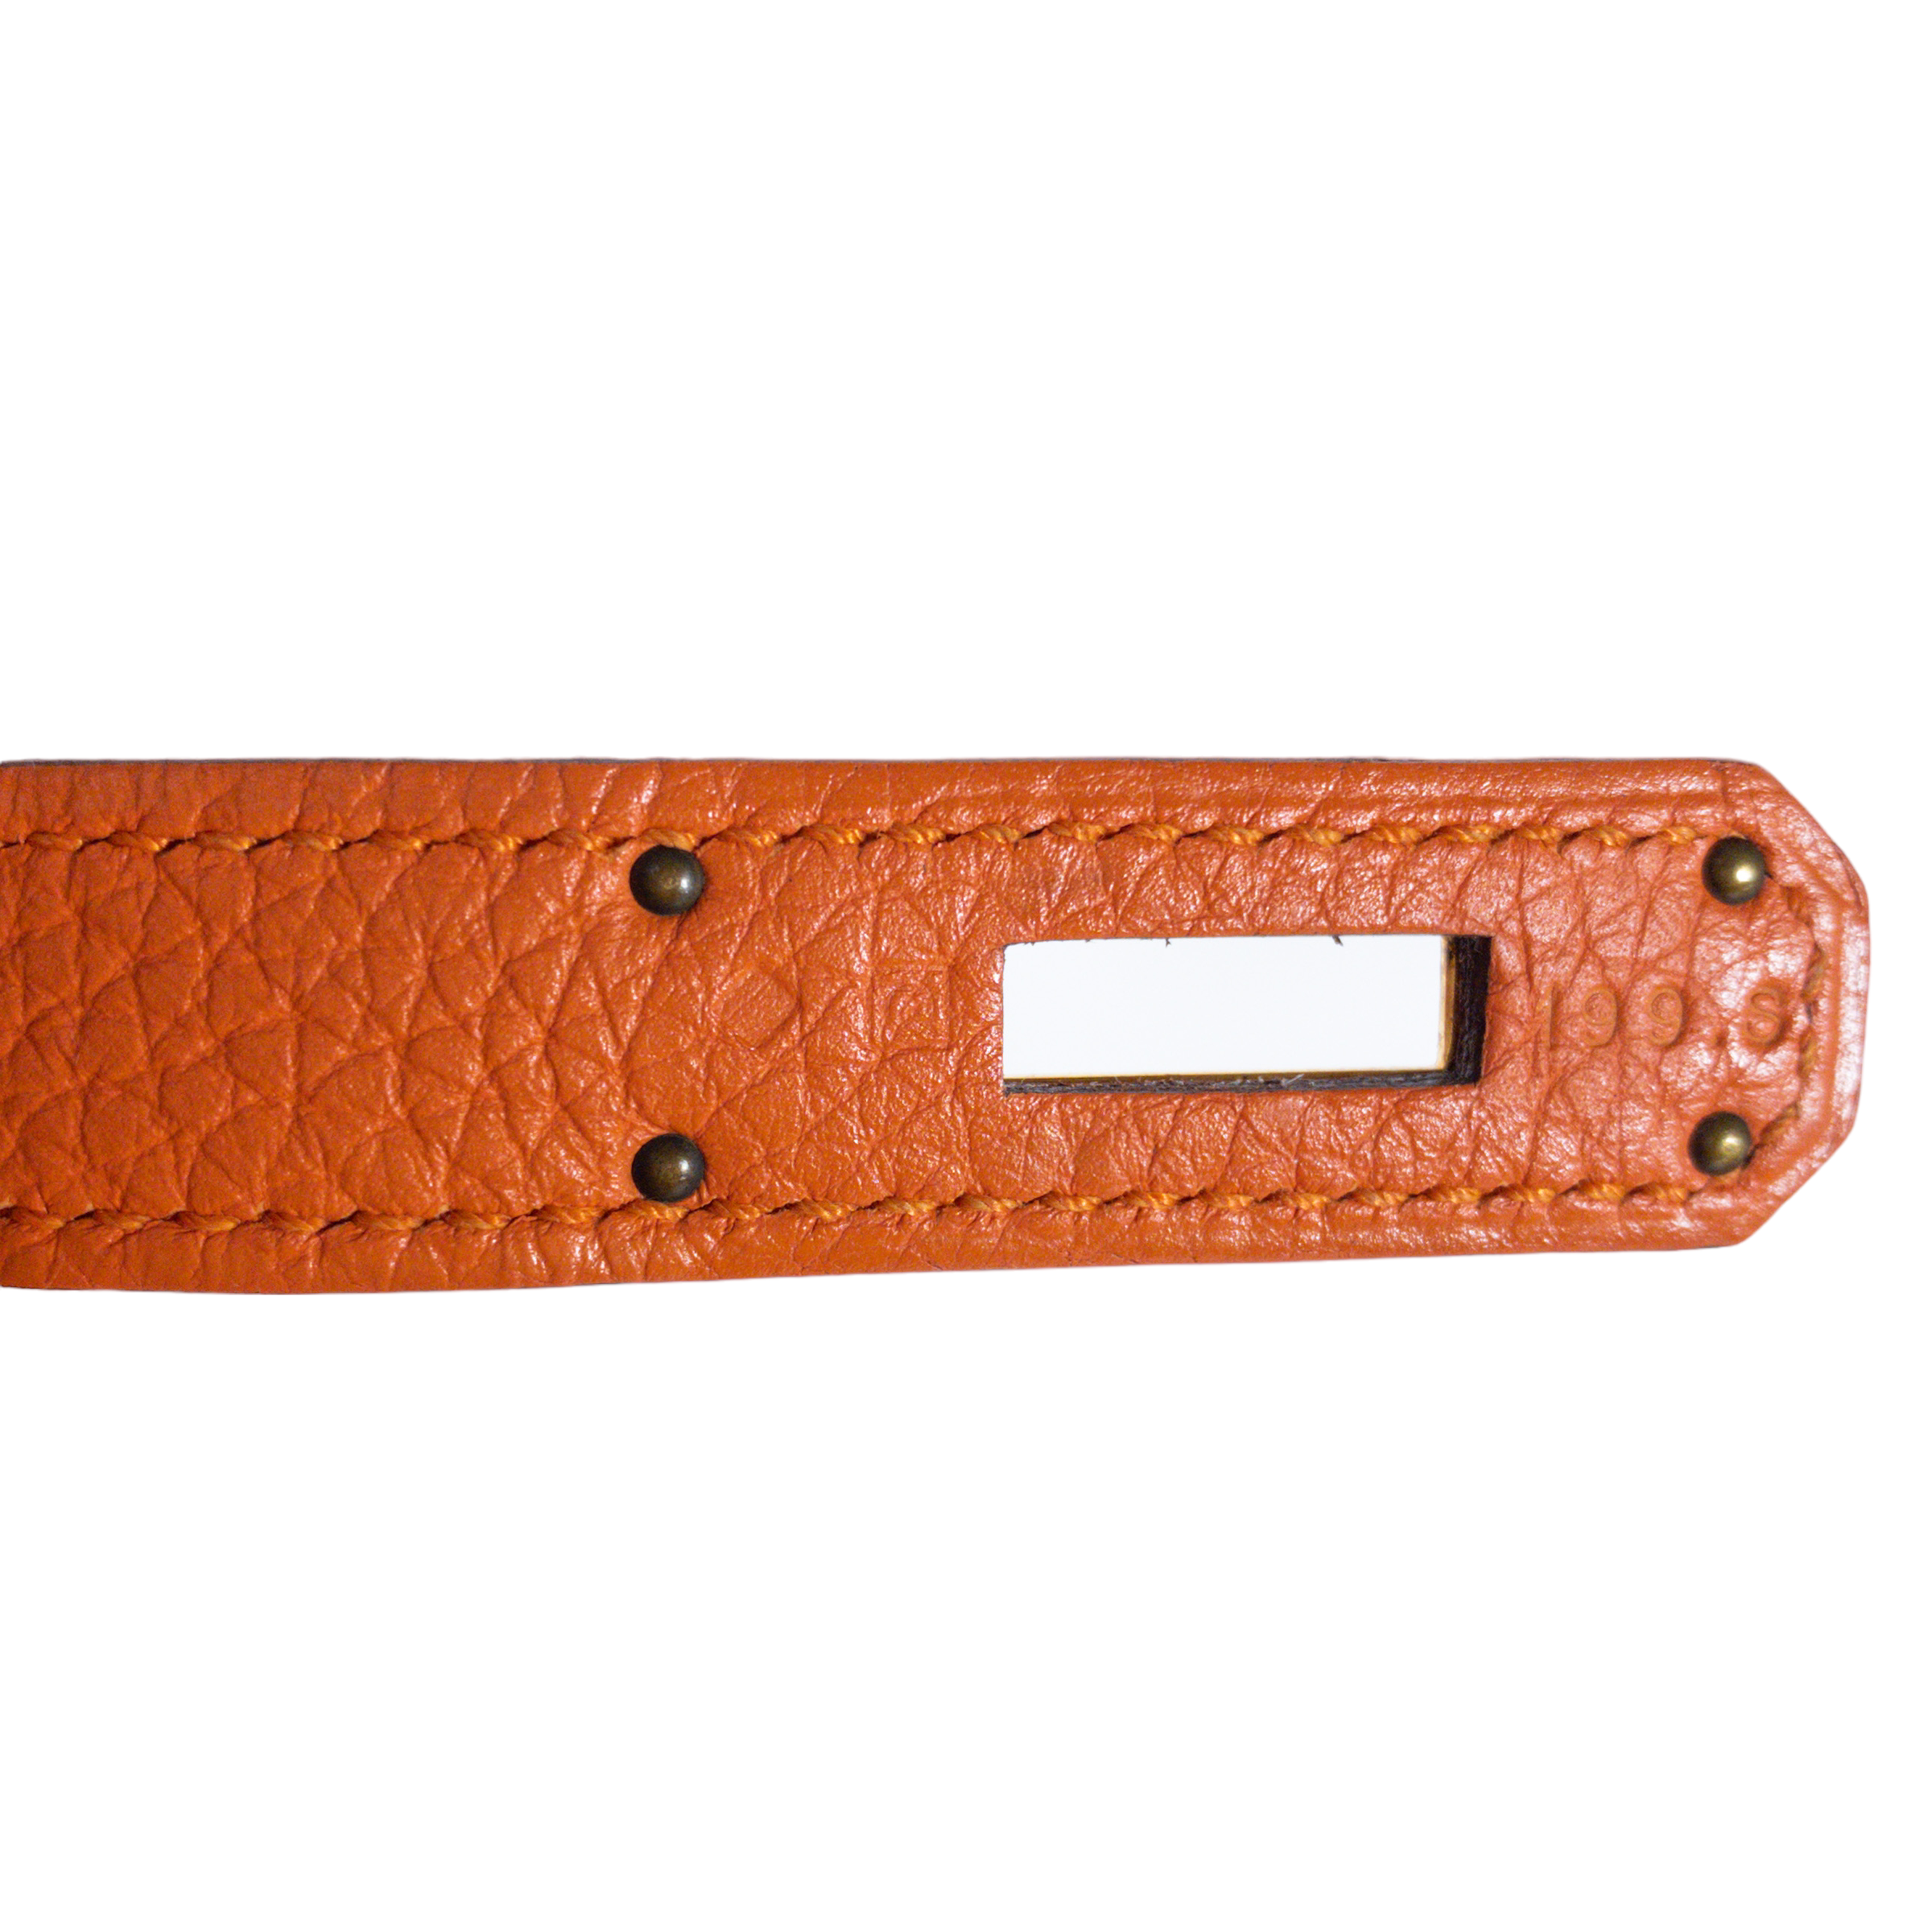 Hermes Orange Togo Leather Kelly 32 – STYLISHTOP